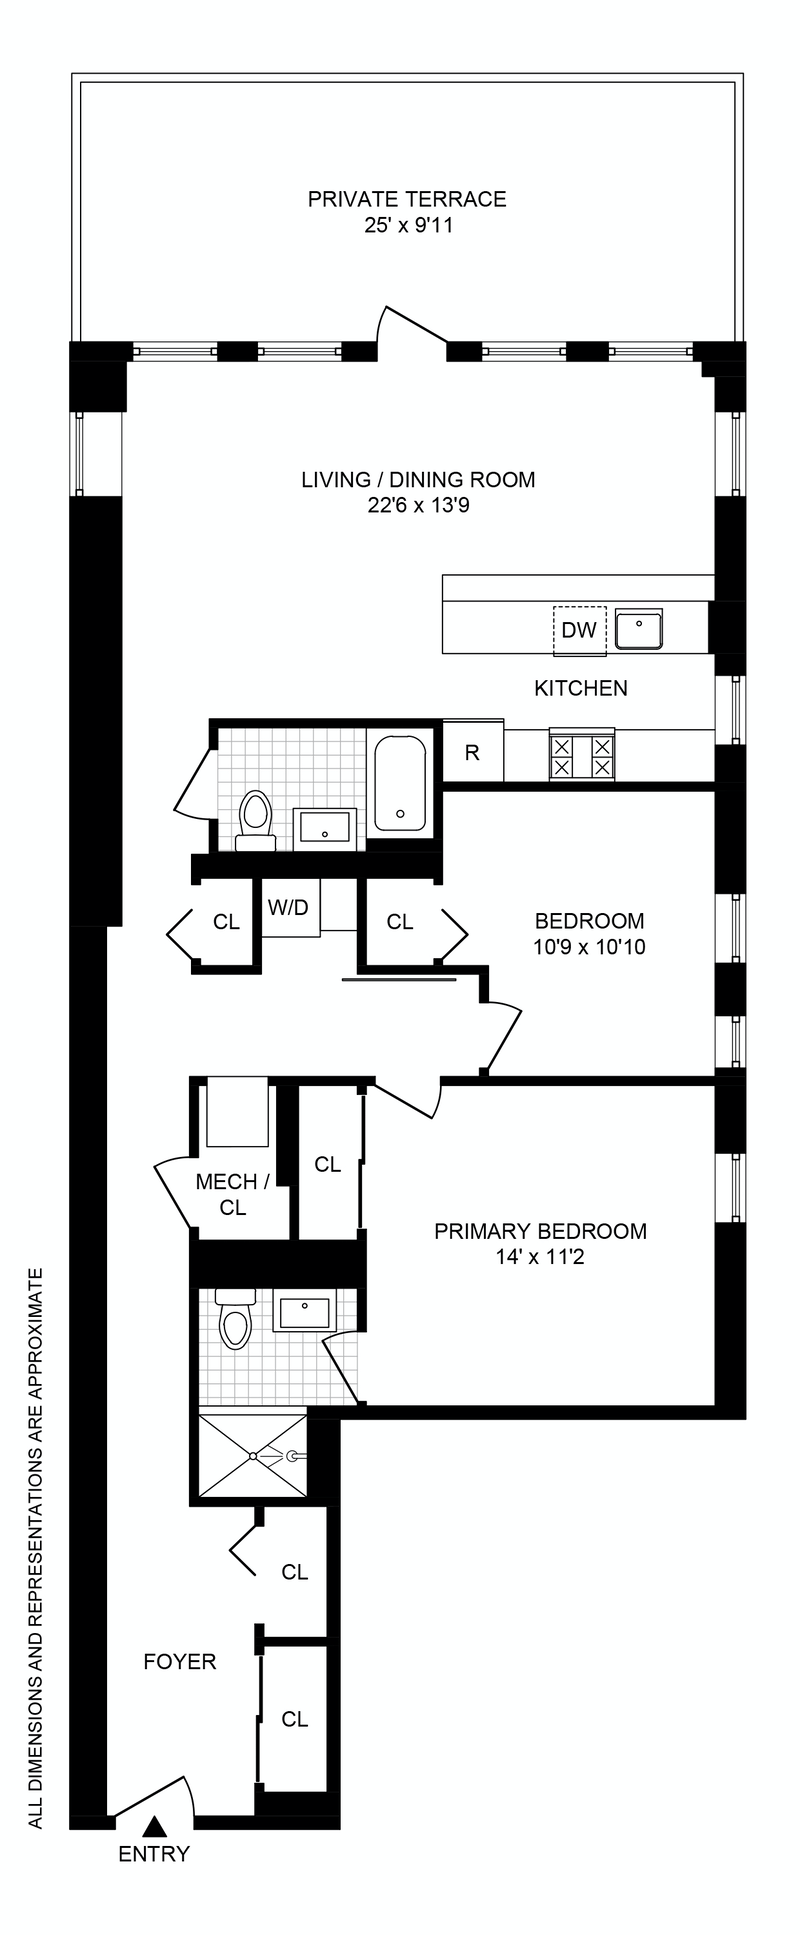 Floorplan for 318 Knickerbocker Avenue, 2M